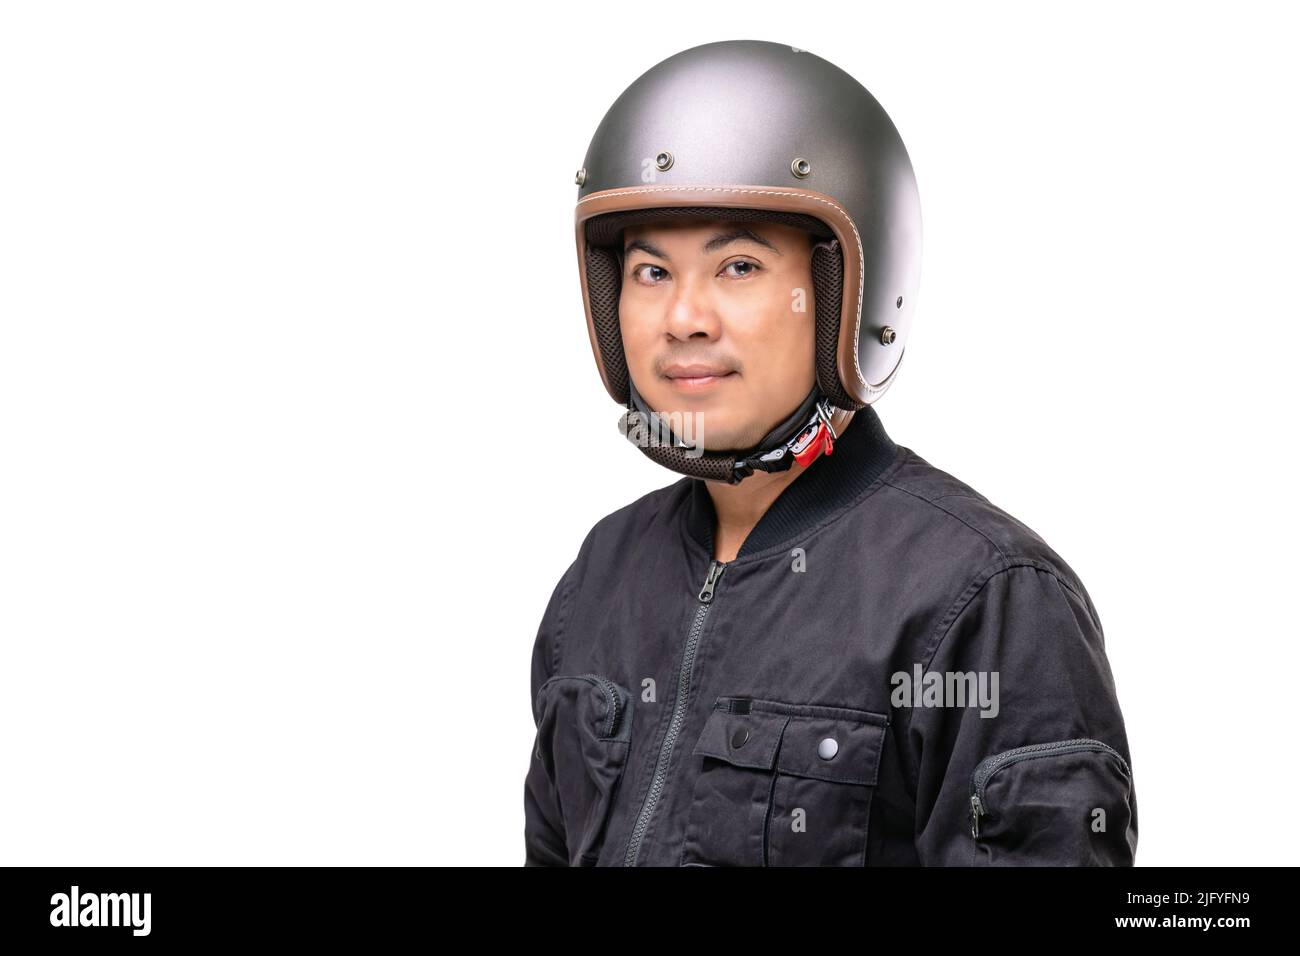 Motociclista o pilota che indossa un casco d'epoca. Concetto di guida sicura. Studio girato isolato su sfondo bianco Foto Stock